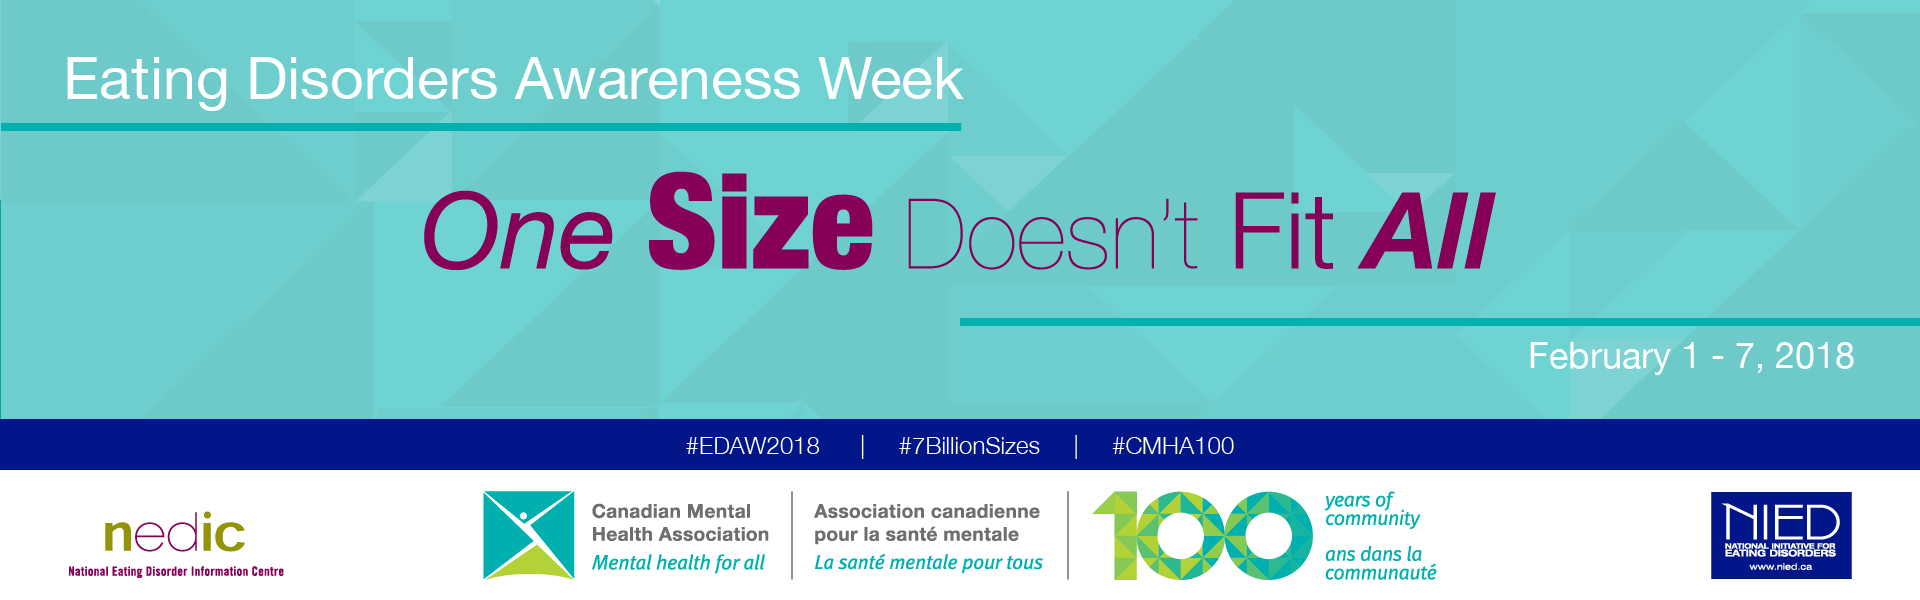 cmha observes eating disorders awareness week, february 1-7